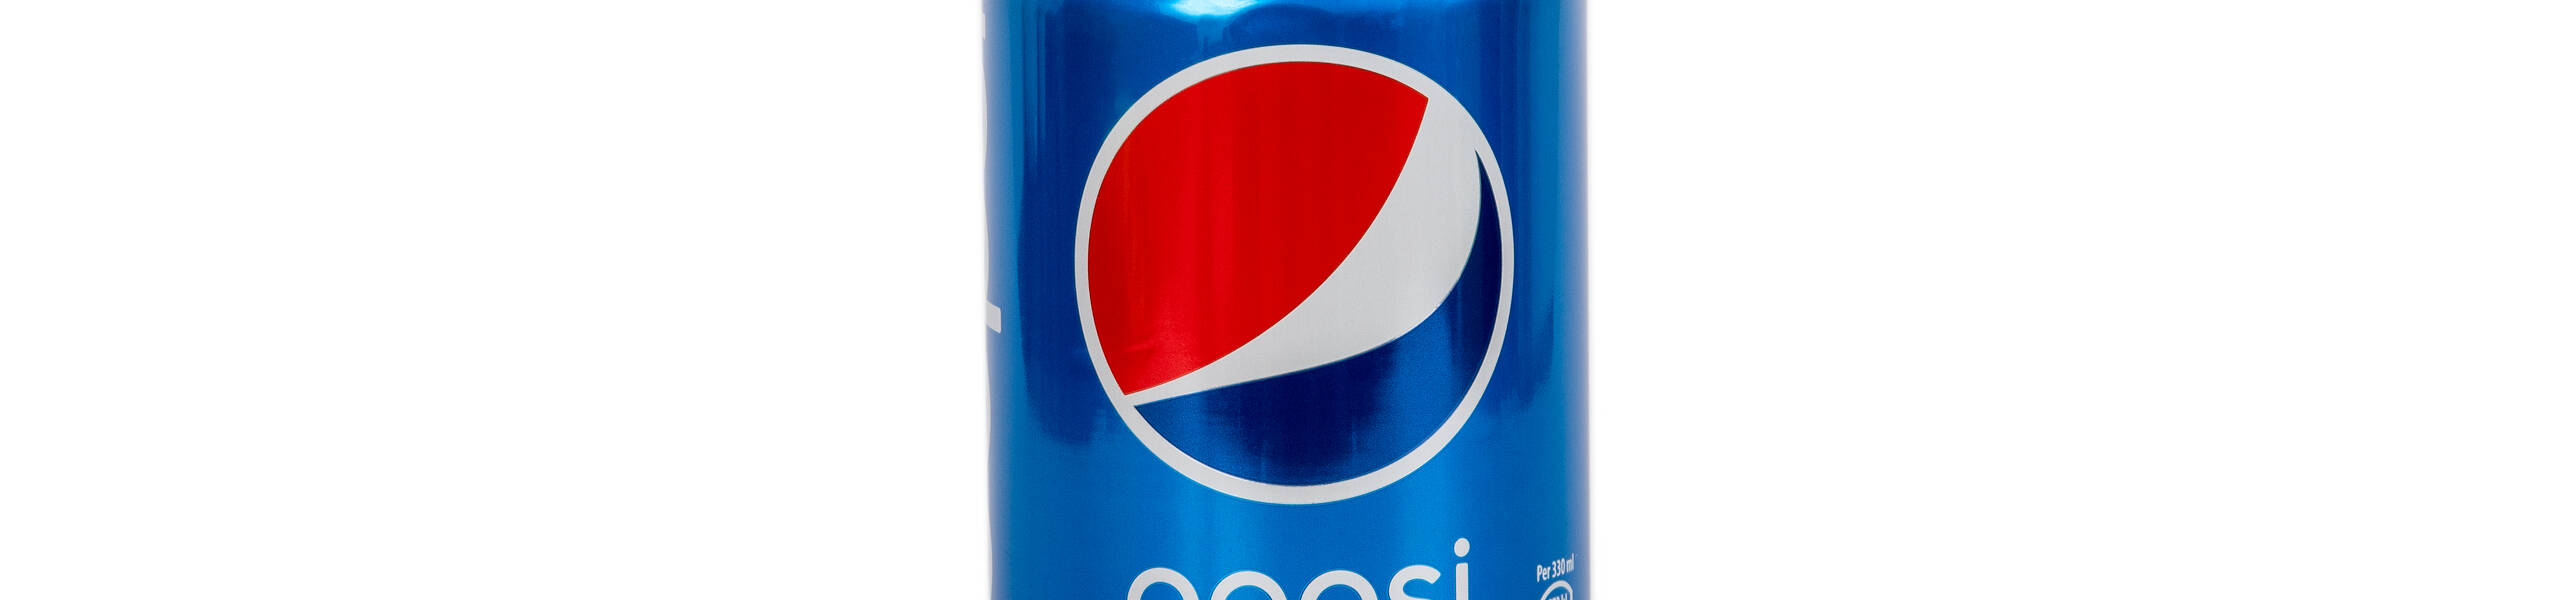 NFL ต่อสัญญาการเป็นสปอนเซอร์กับ Pepsi 